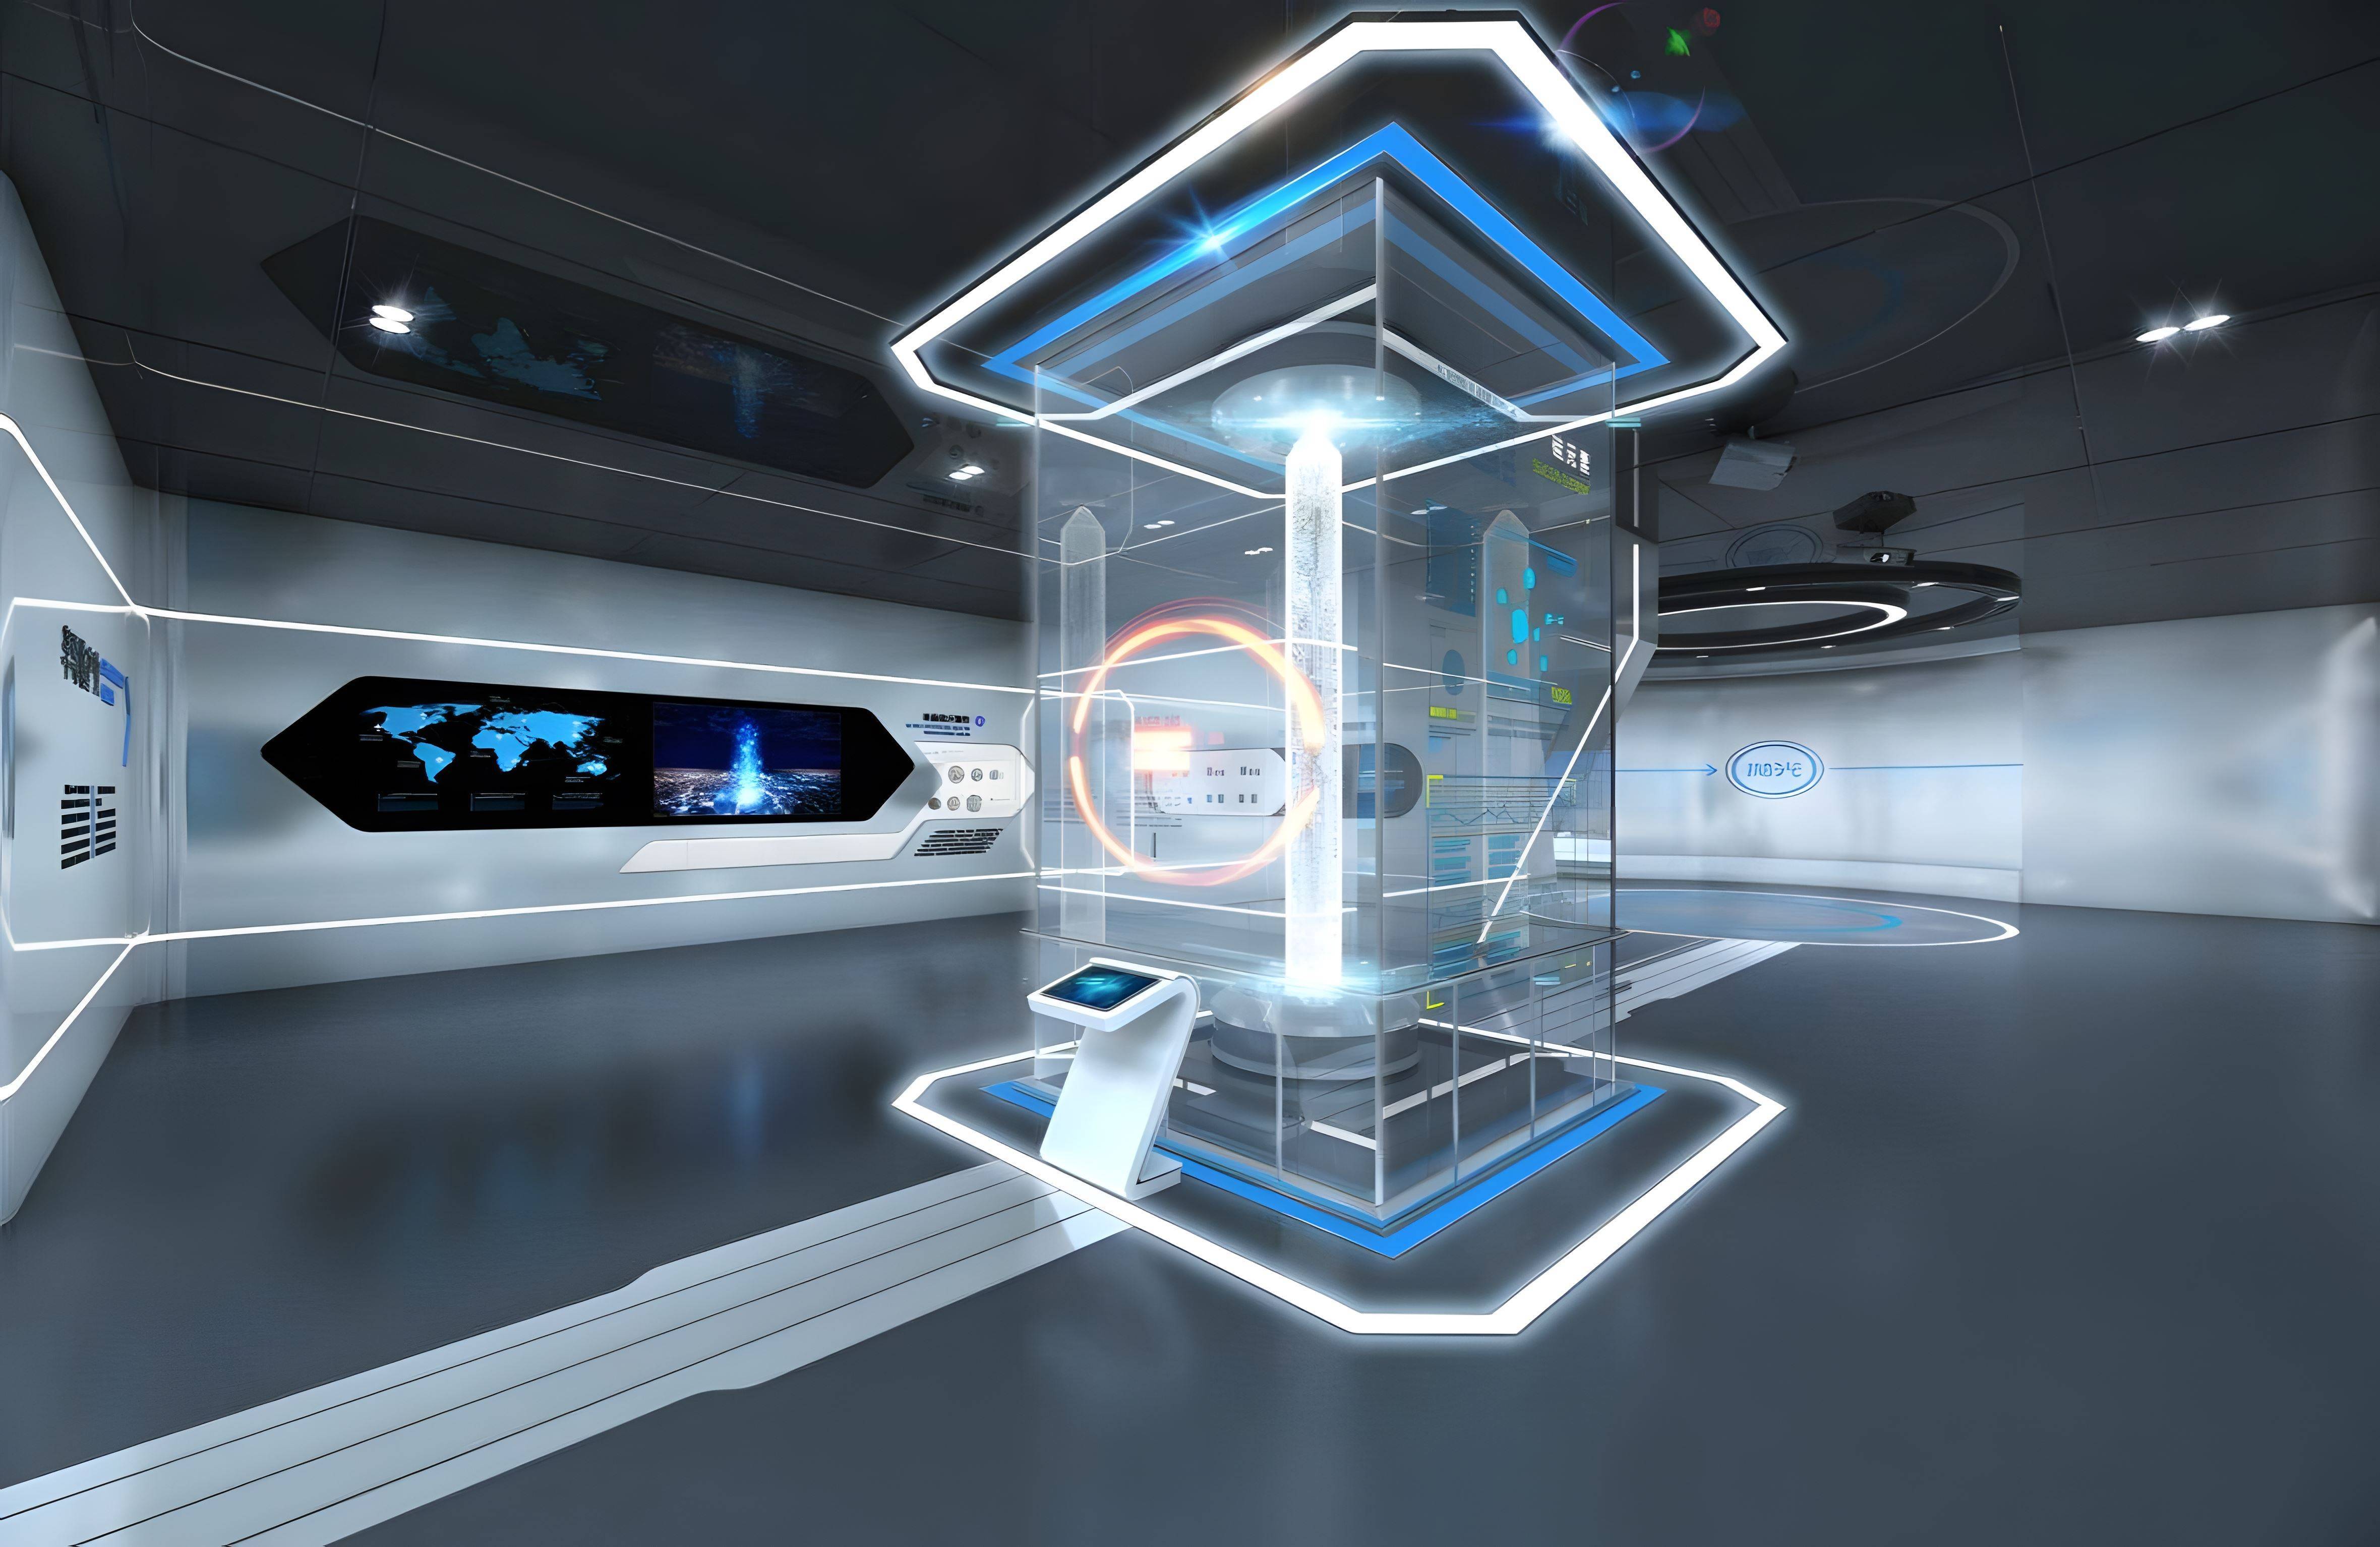 这是一张展示现代或未来高科技控制室的图片，内有透明显示屏、数据图表和未来风格的室内设计。